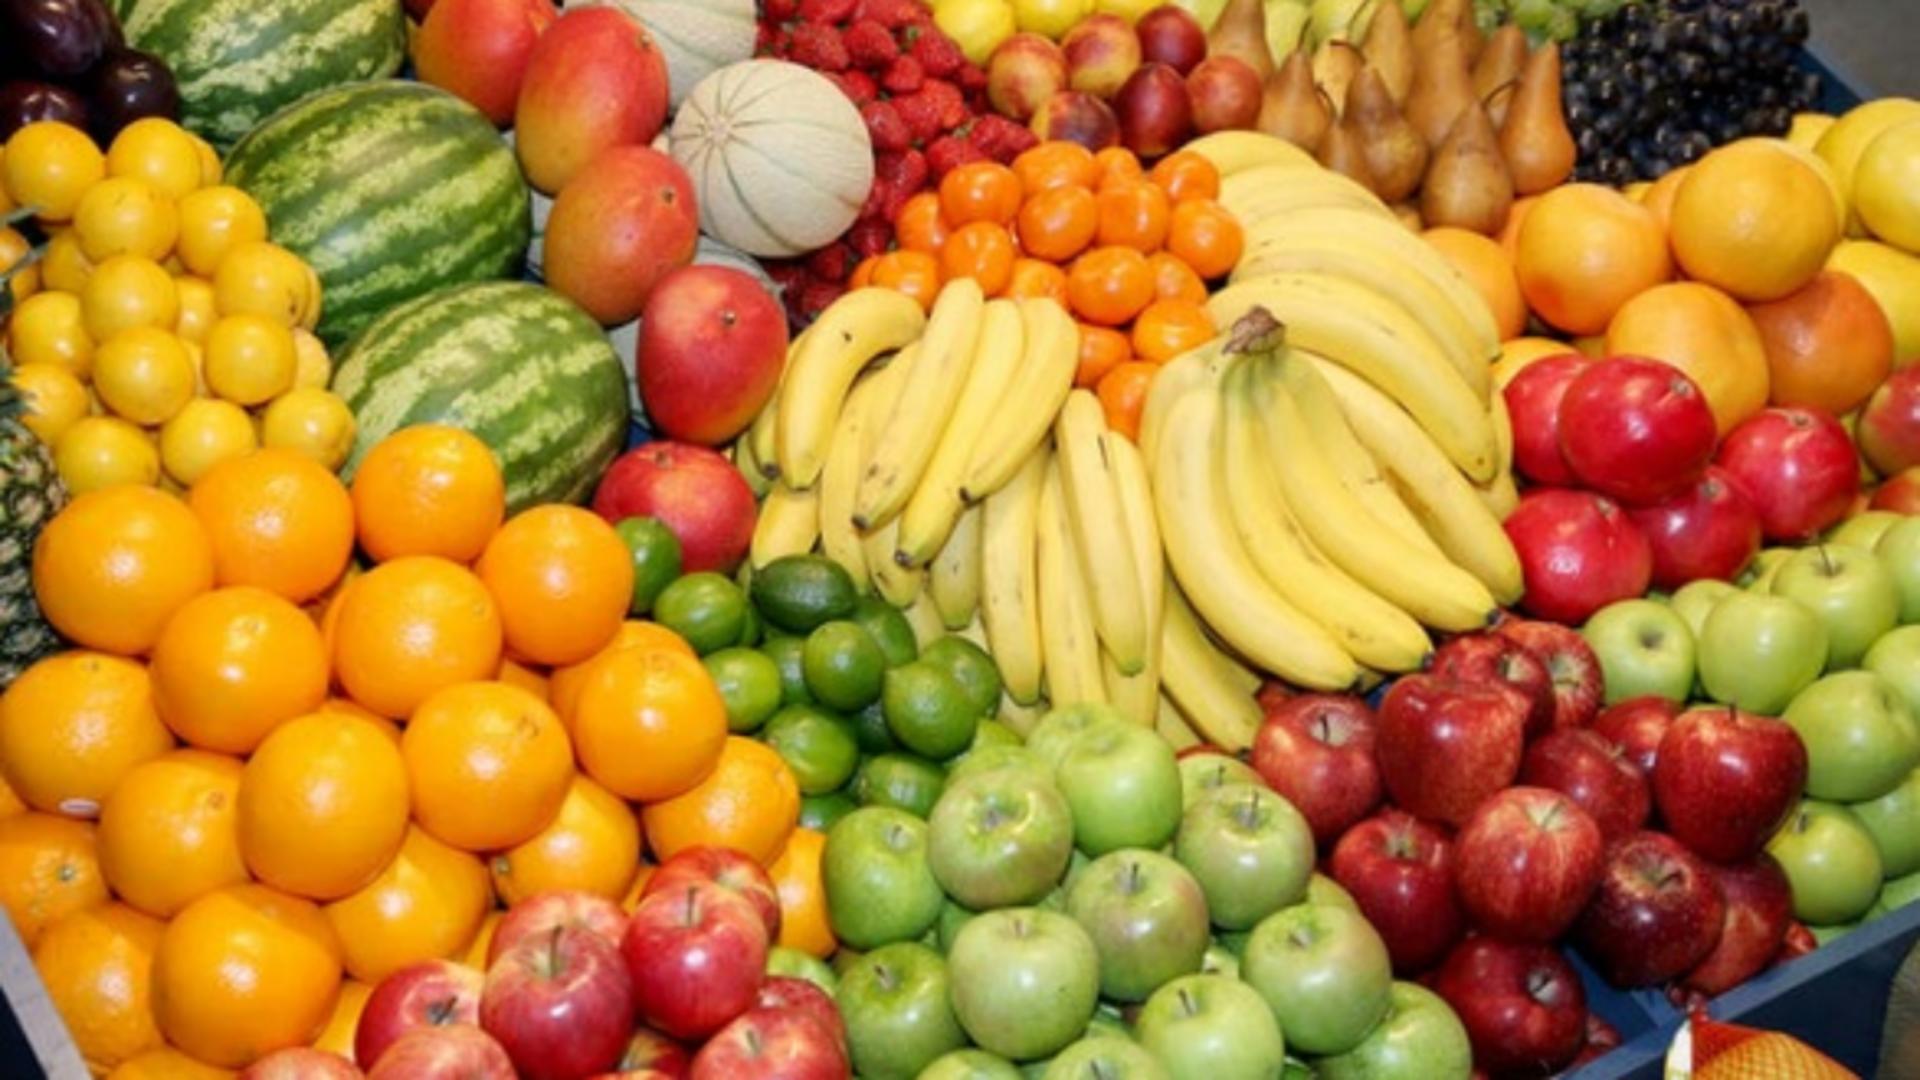  Zeci de tone de fructe cu pesticide au ajuns în magazinele din România